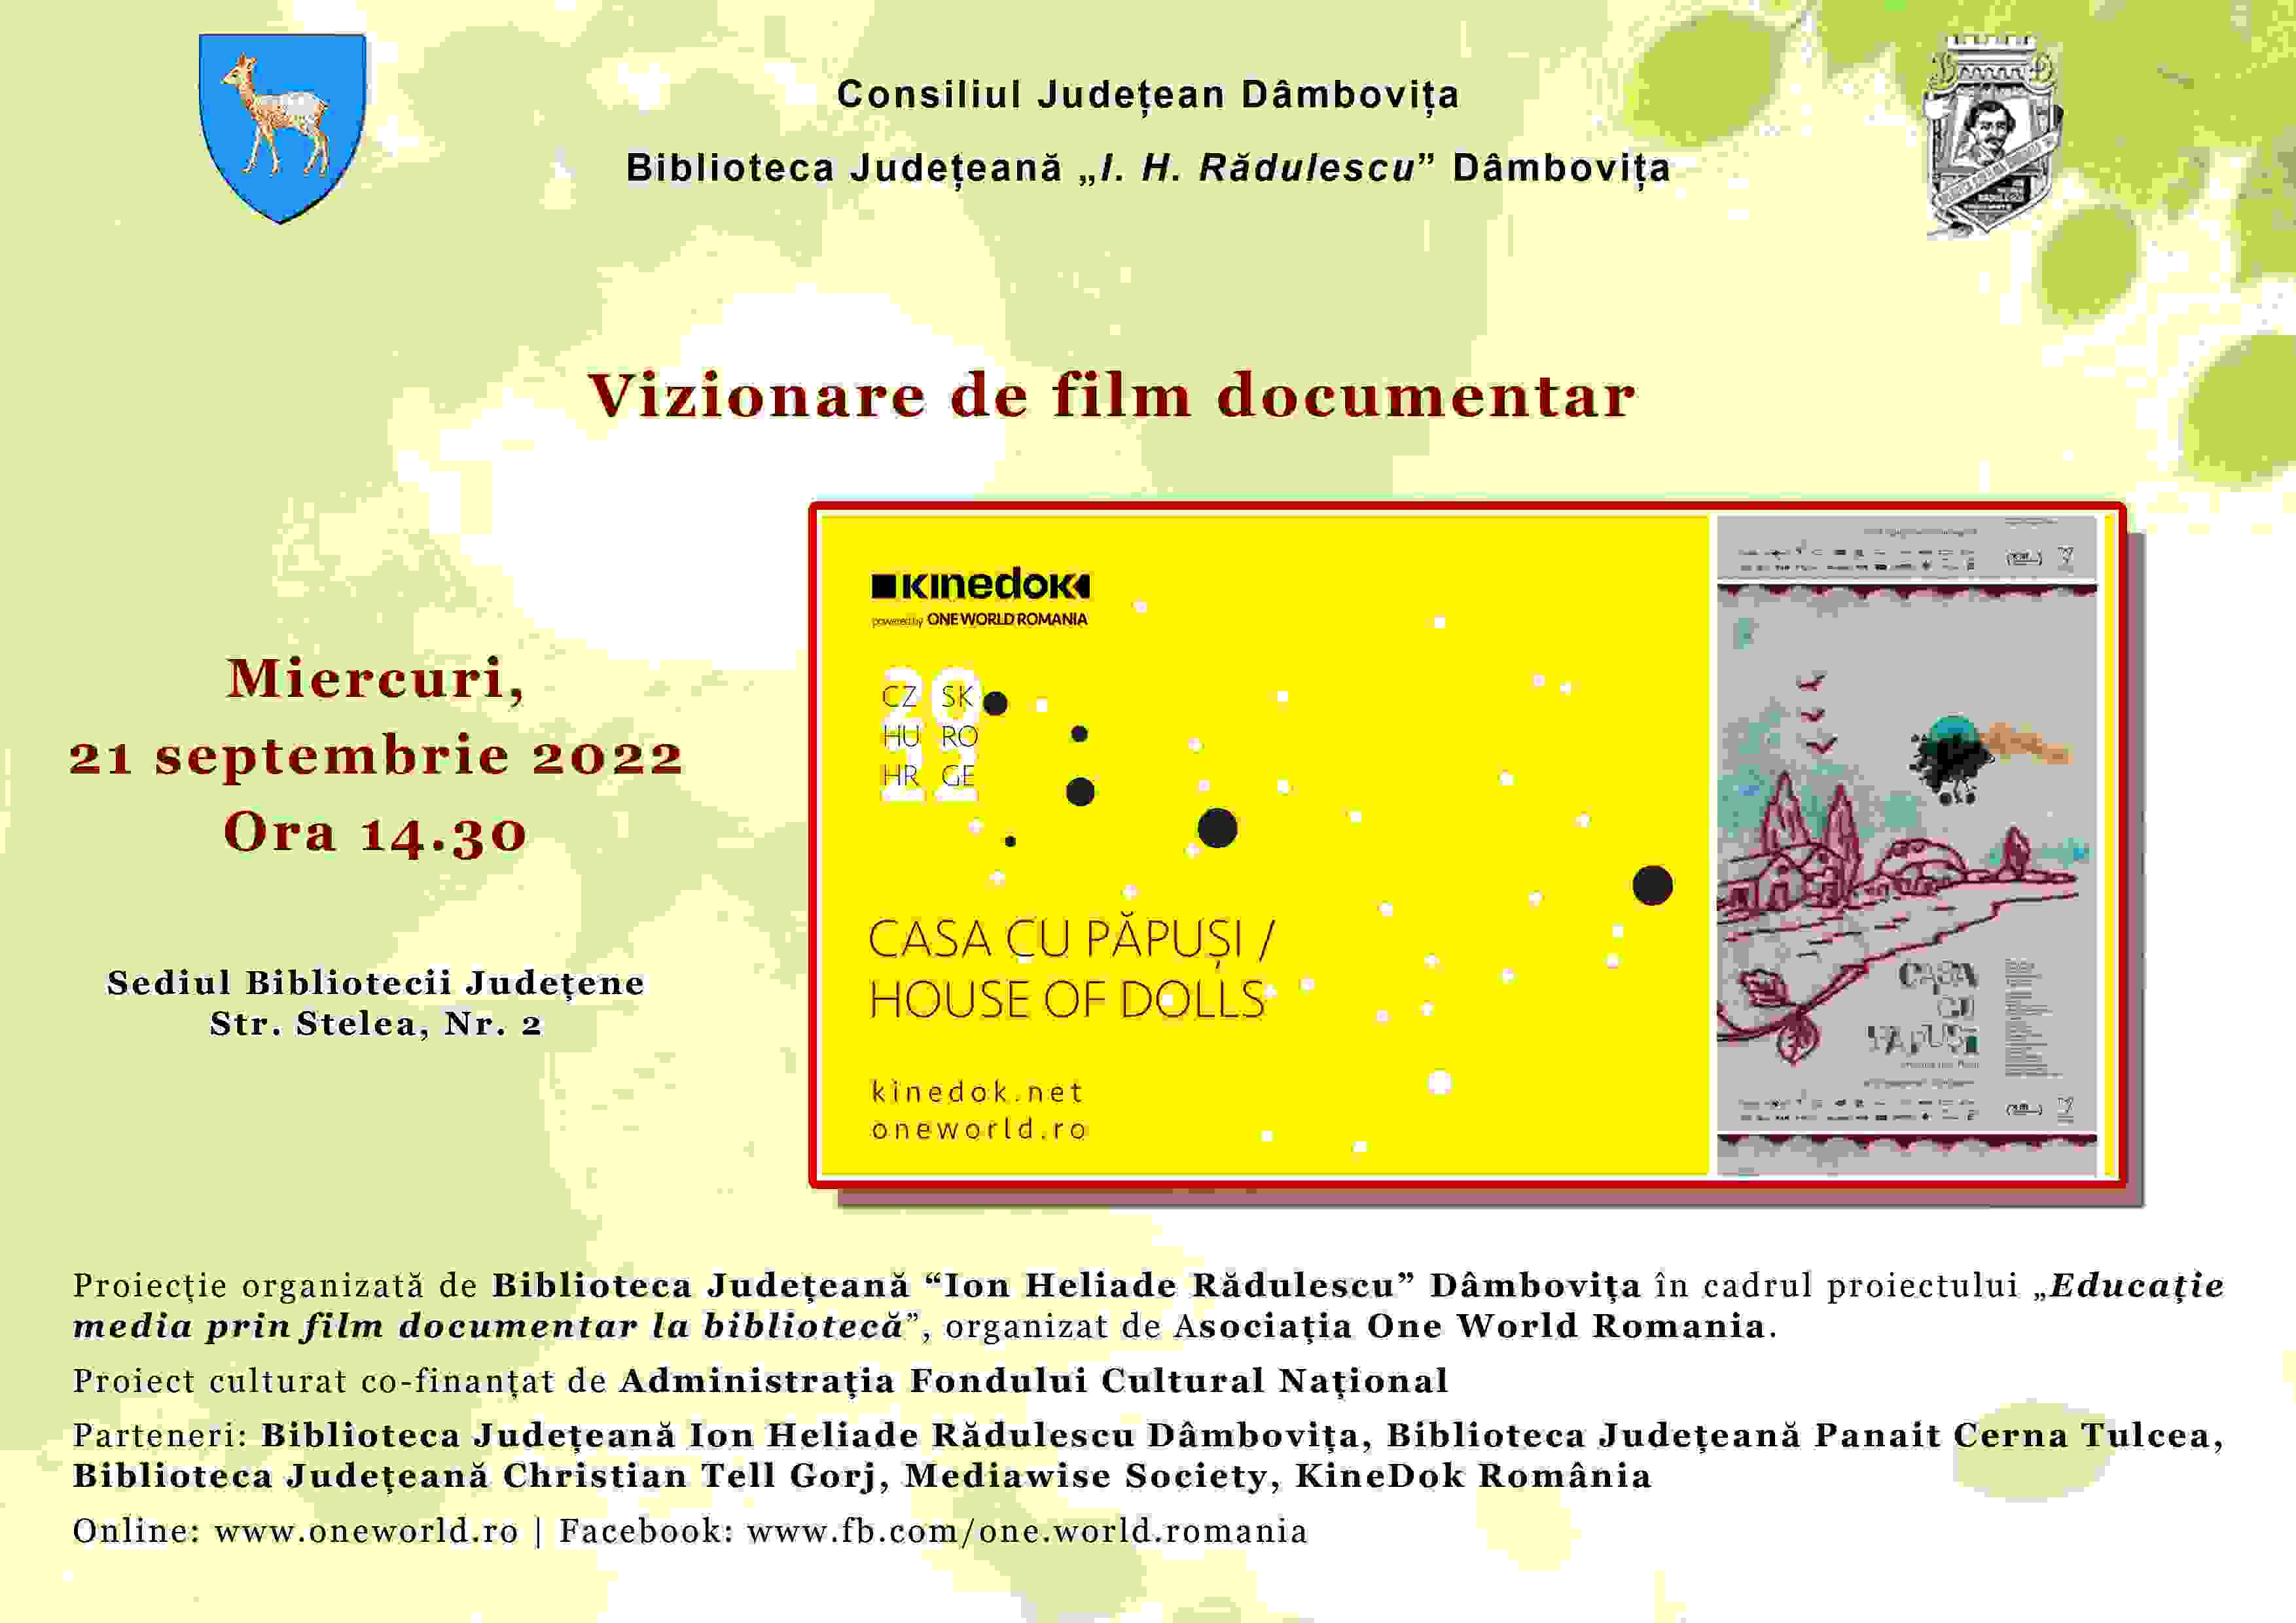  Biblioteca Judeţeană Ion Heliade Rădulescu Dâmboviţa vă invită la  filme documentare powered by One World Romania